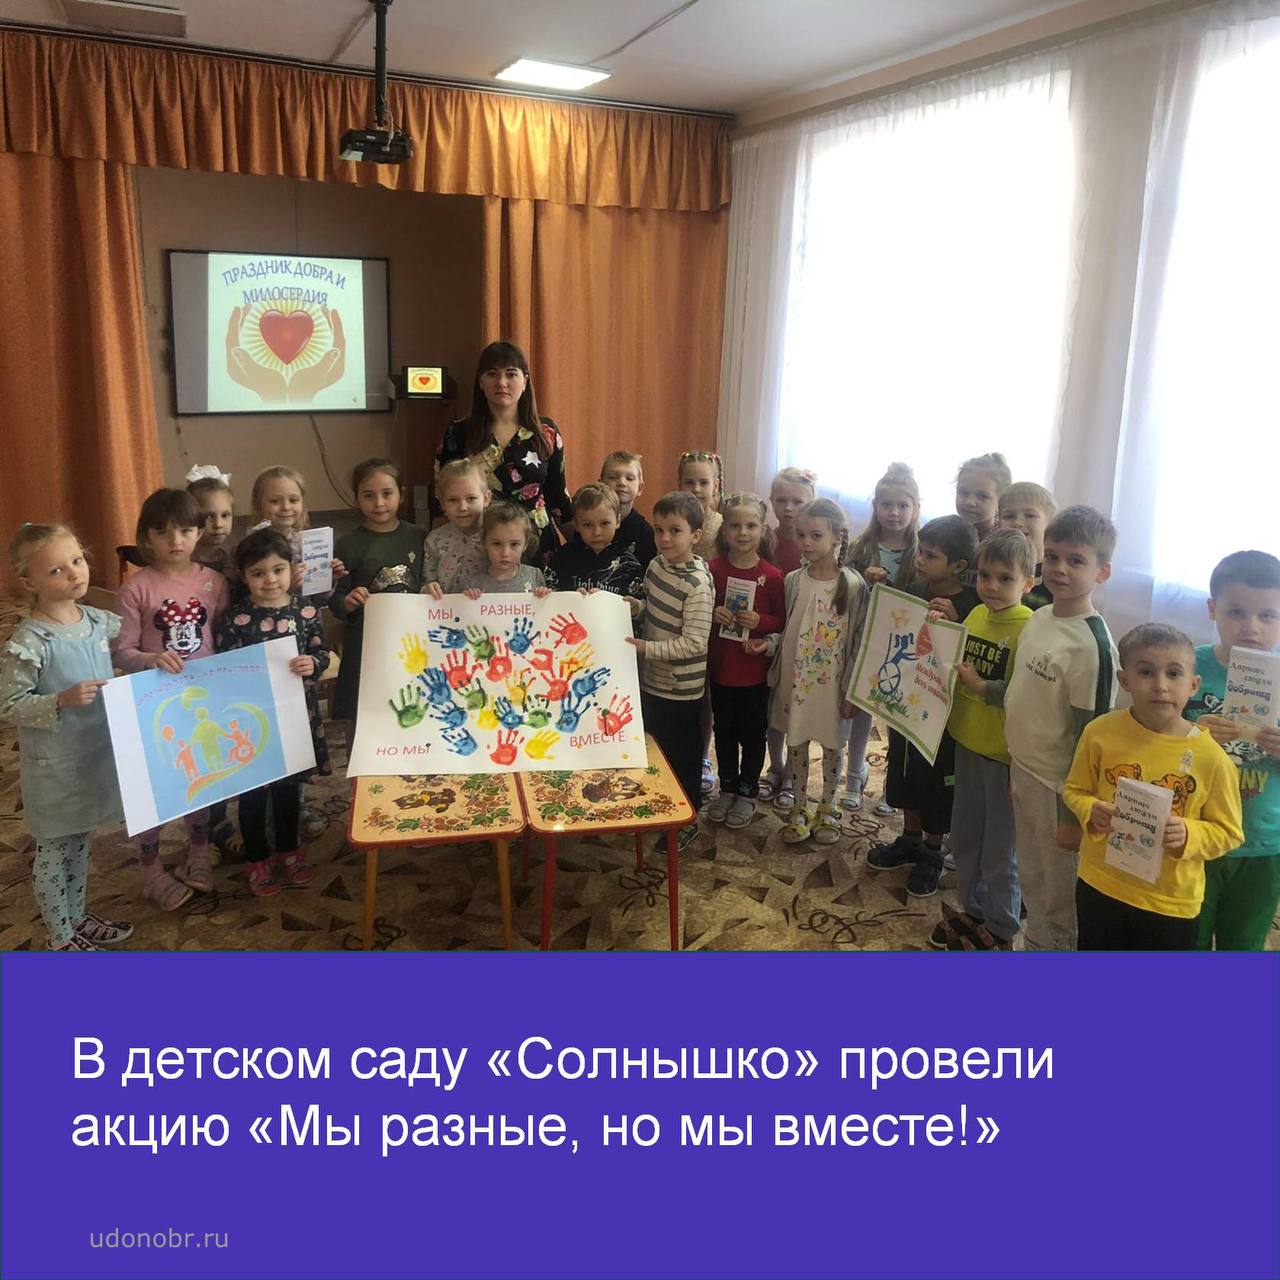 В детском саду «Солнышко» провели акцию «Мы разные, но мы вместе!»